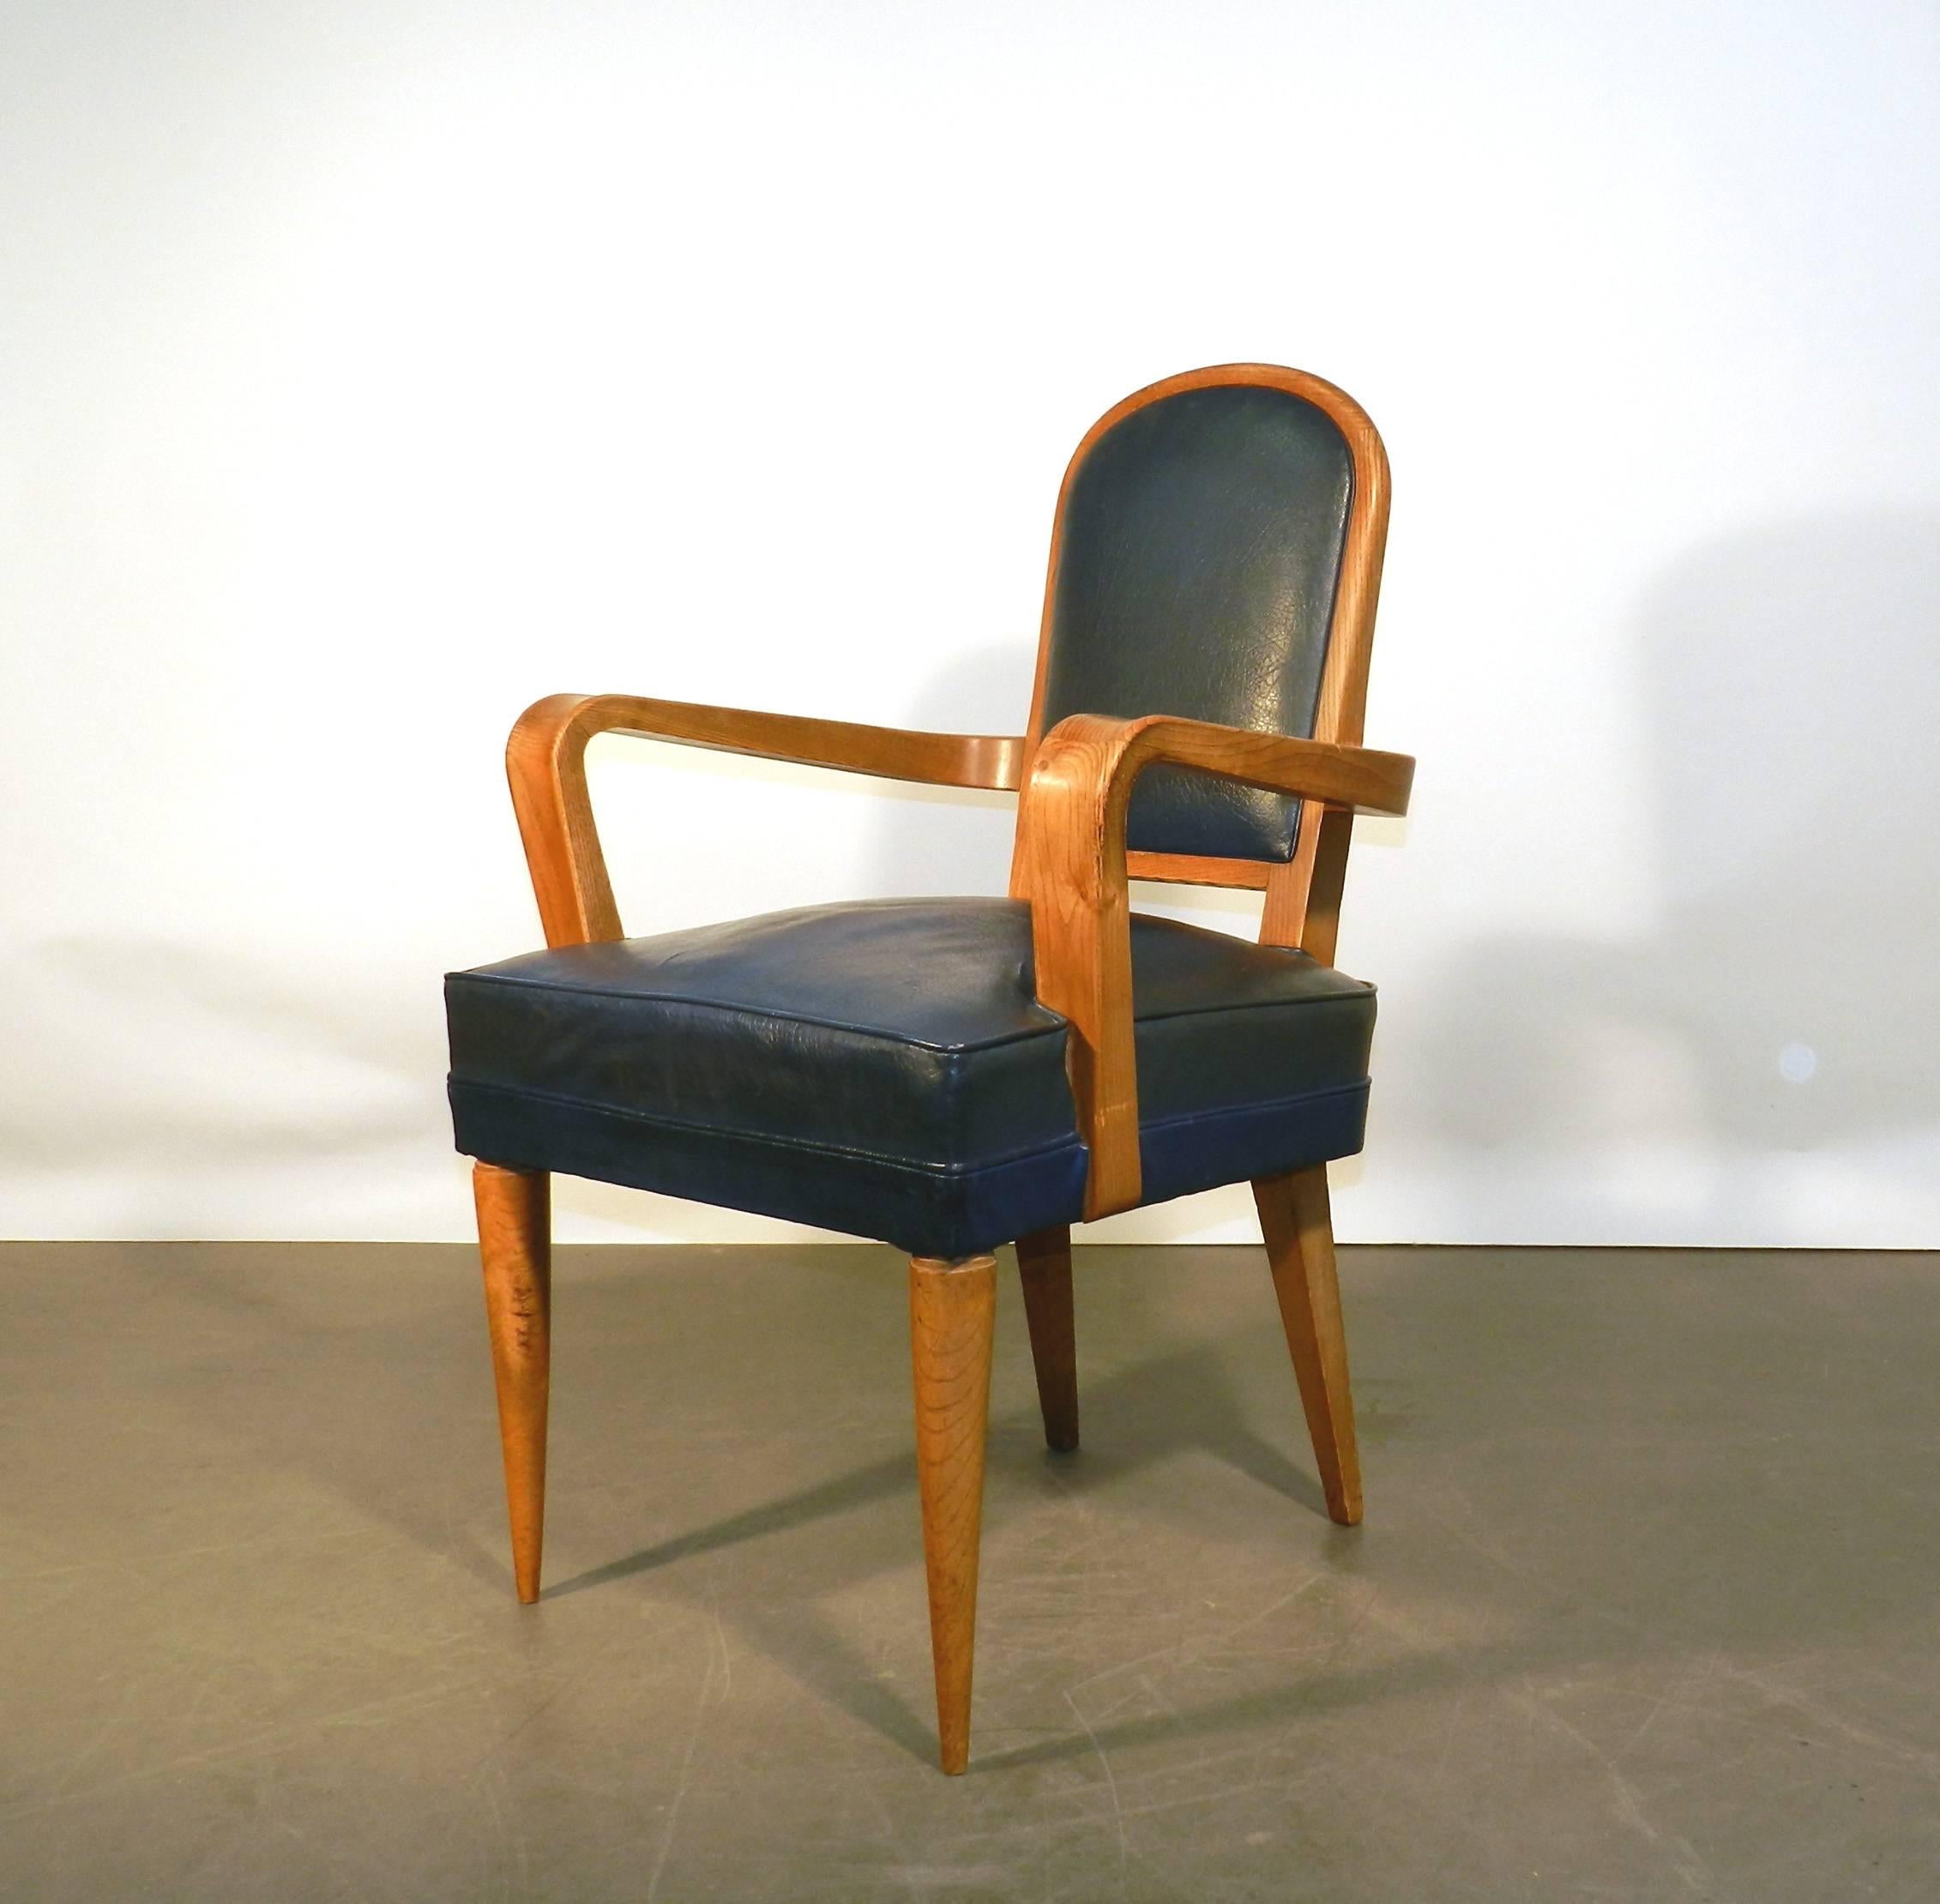 Art-Deco-Schreibtischsessel aus Ulme und Kunstleder, Batistin Spade zugeschrieben
die Armlehne des Stuhls ist 64 cm hoch (25.20